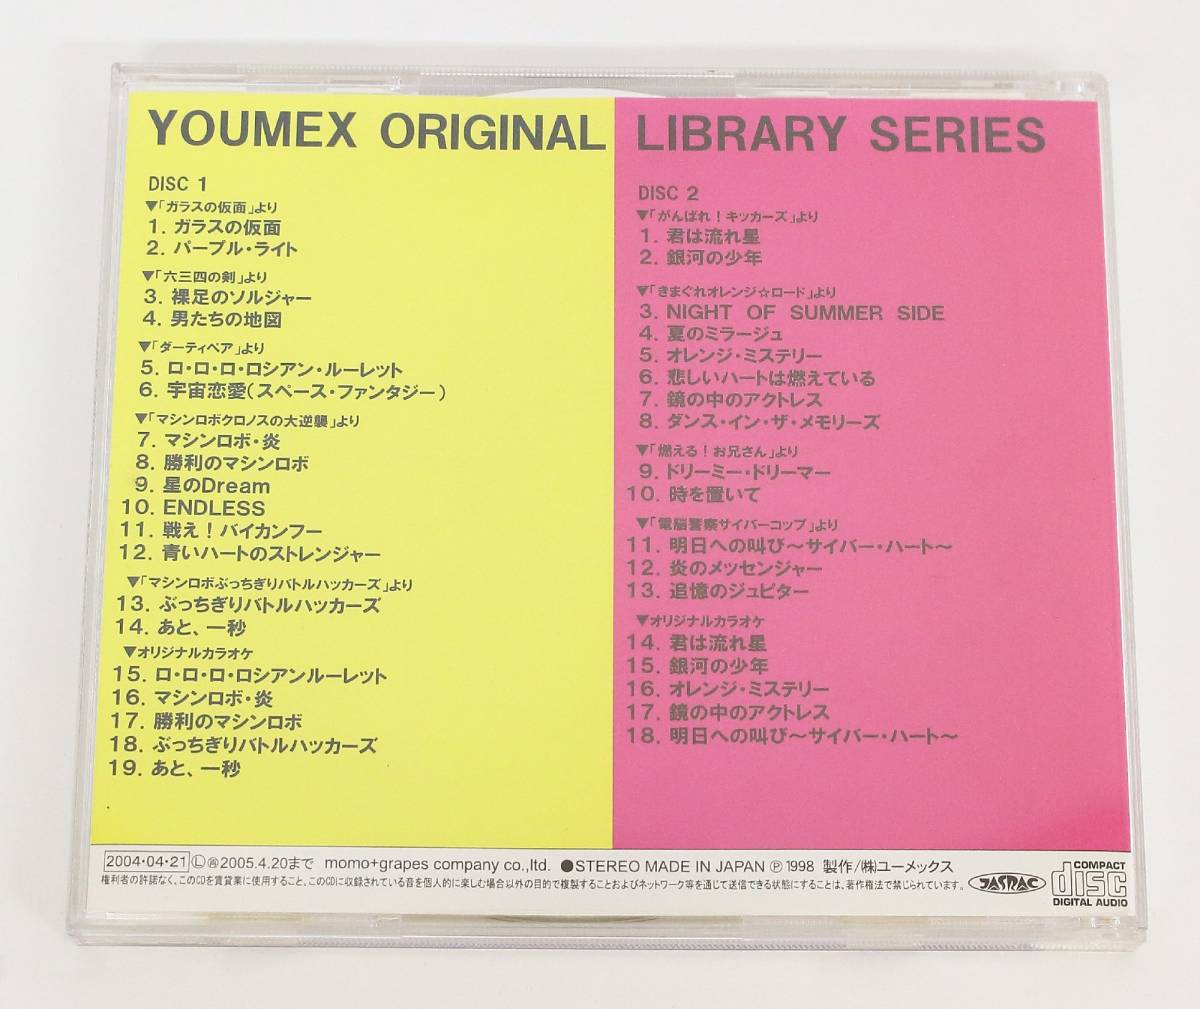 安売り 復刻盤 YOUMEX ORIGINAL LIBRARY SERIES VOL.1 overdekook.com